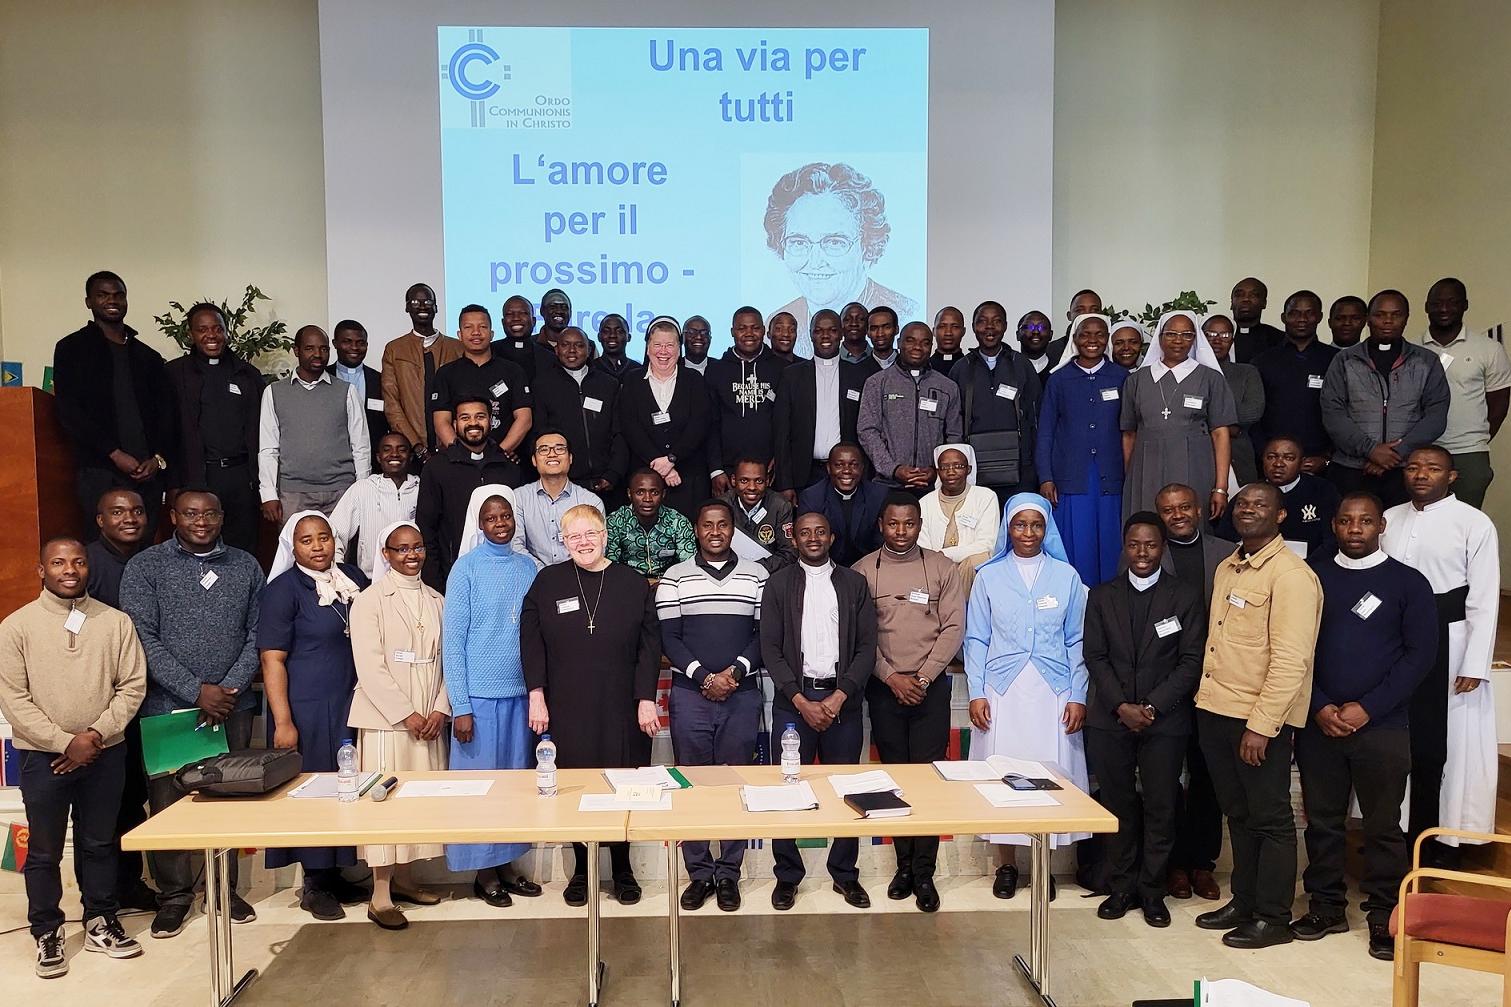 70 Teilnehmer/innen aus 24 Nationen wurden am 4. Mai beim Internationalen Communio-Treffen am Collegio Urbano in Rom registriert.